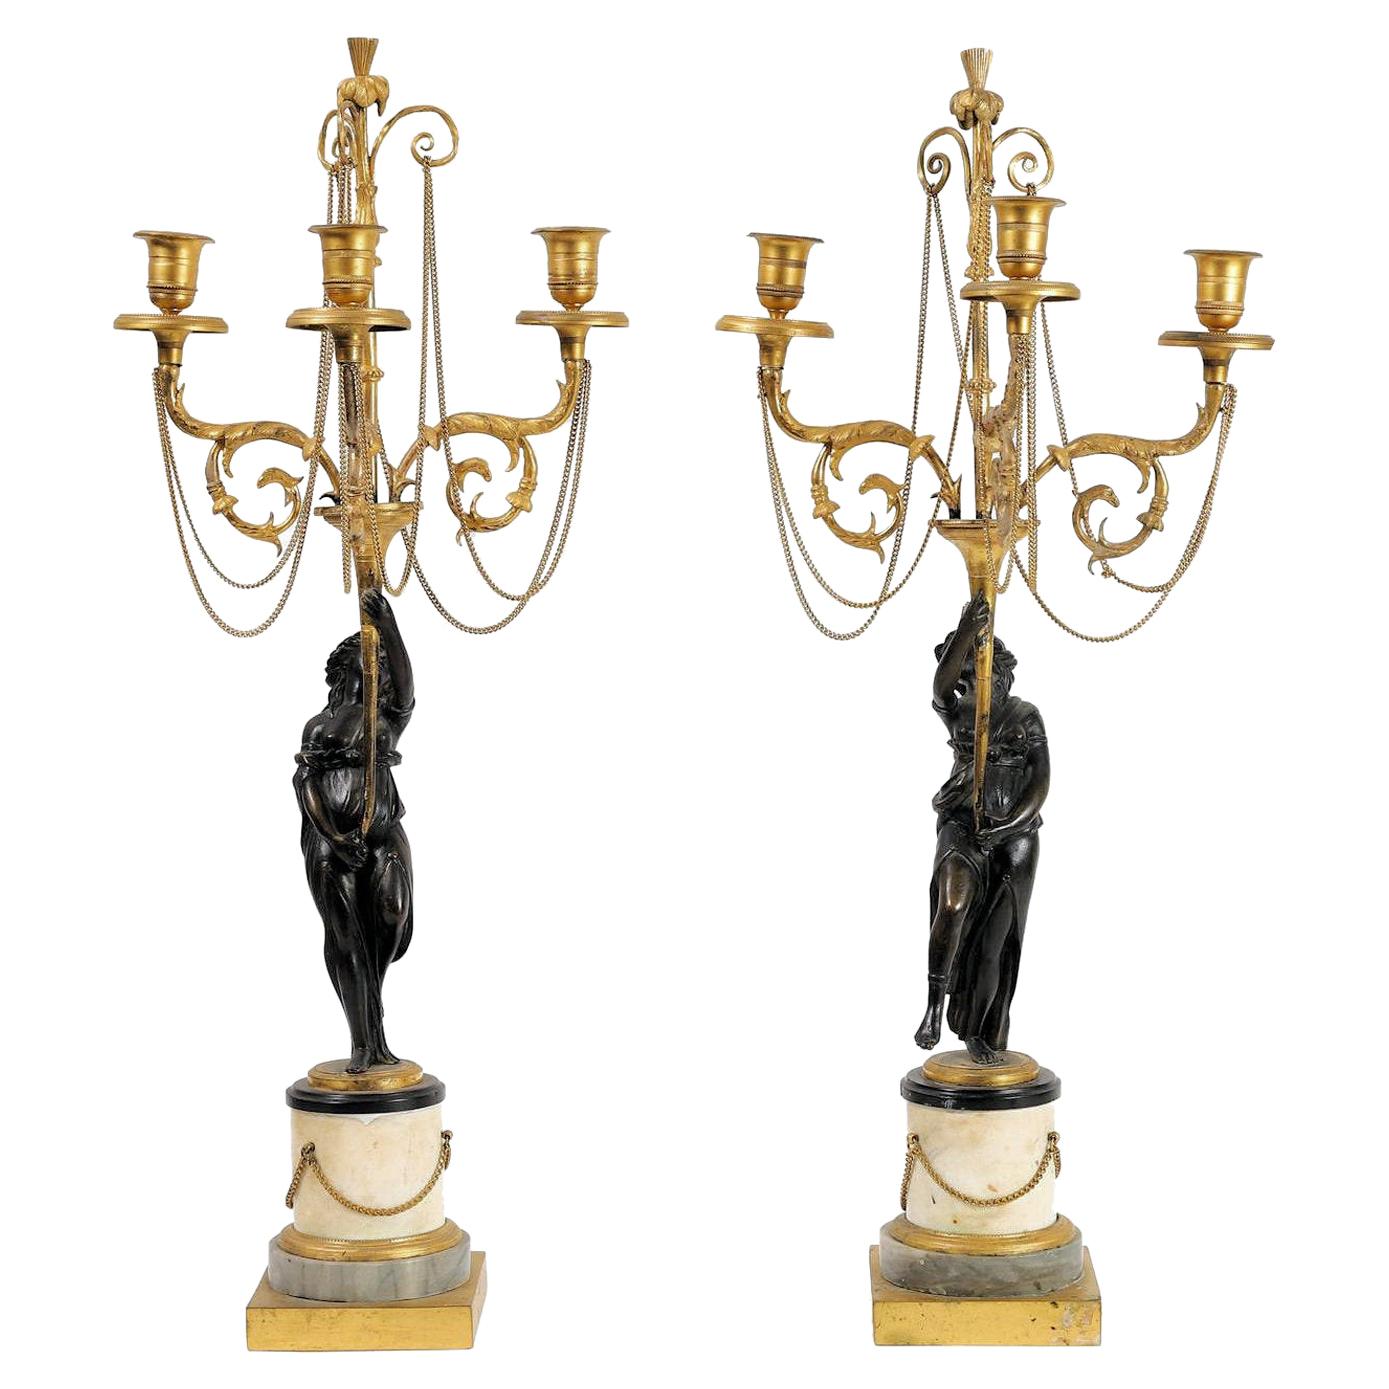 Paar neoklassizistische figurale Directoire-Kandelaber aus vergoldeter und patinierter Bronze